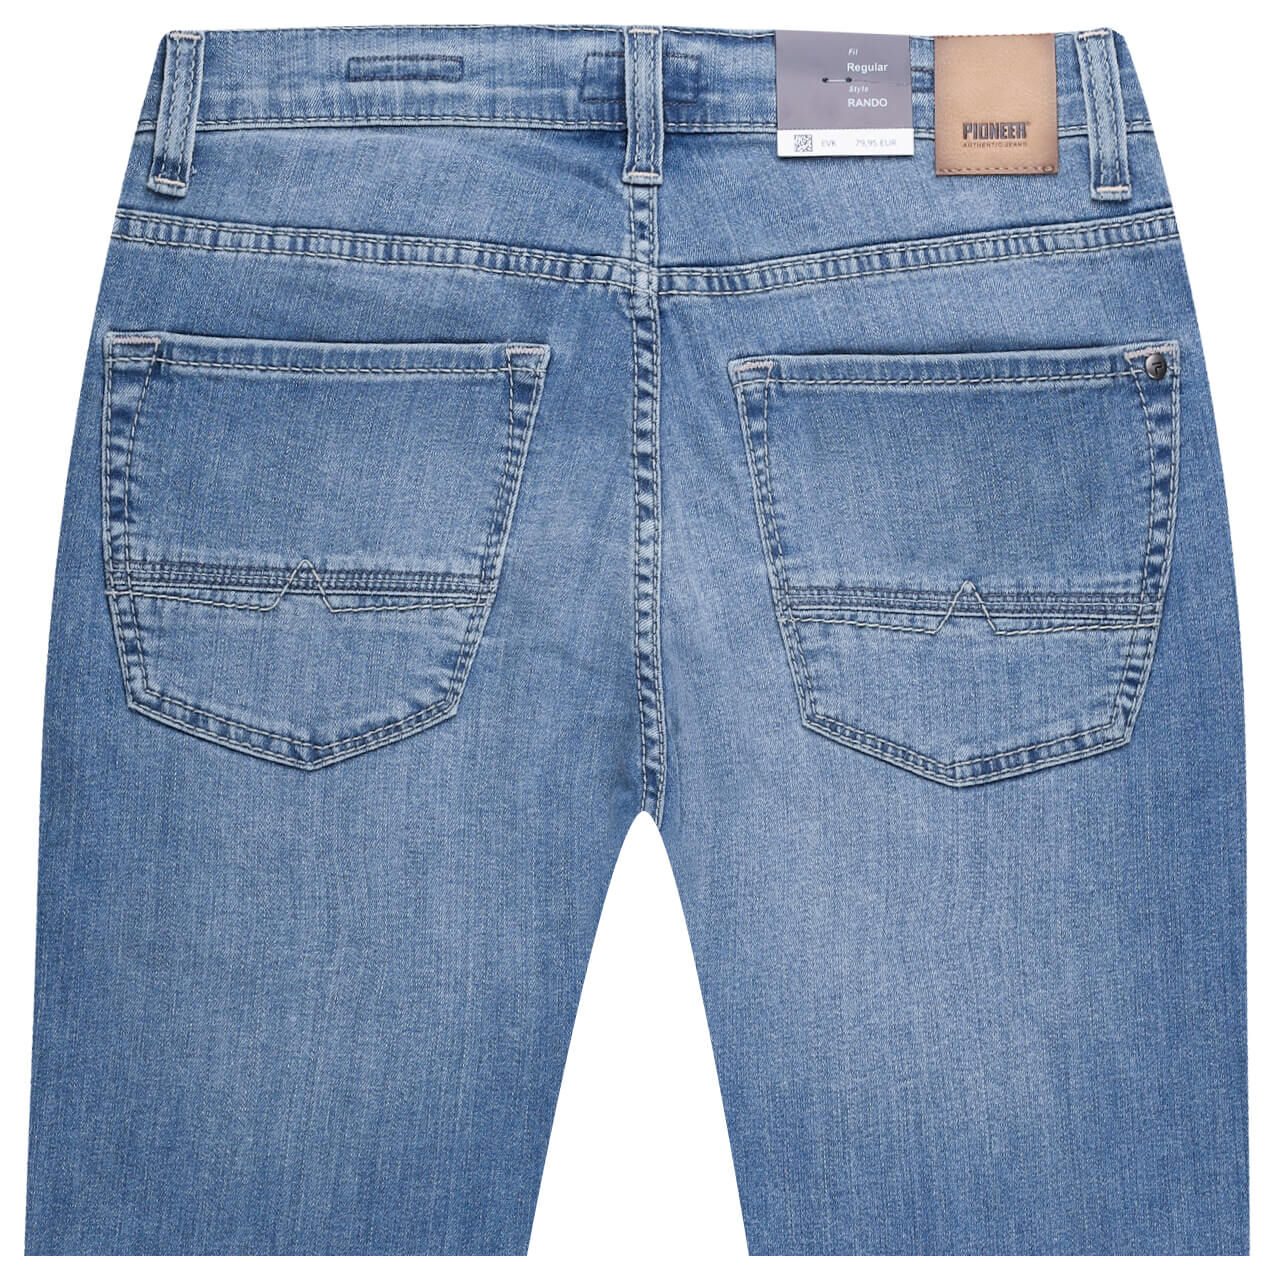 Pioneer Rando Jeans Megaflex soft blue used